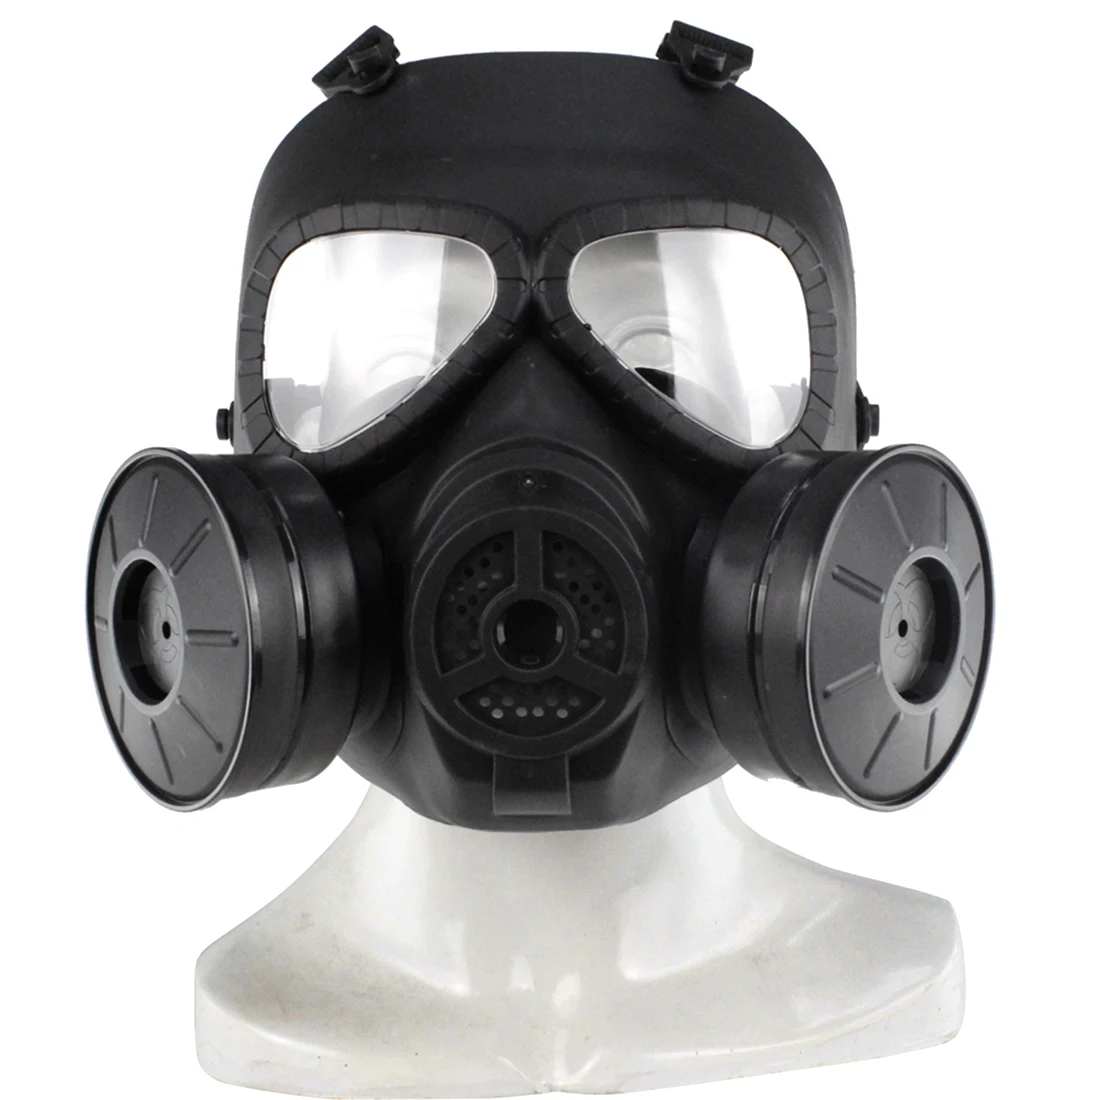 Surwish Head Mask Full Face двойная канистра электрическая вентилирующая биохимическая противогаз для Nerf игр